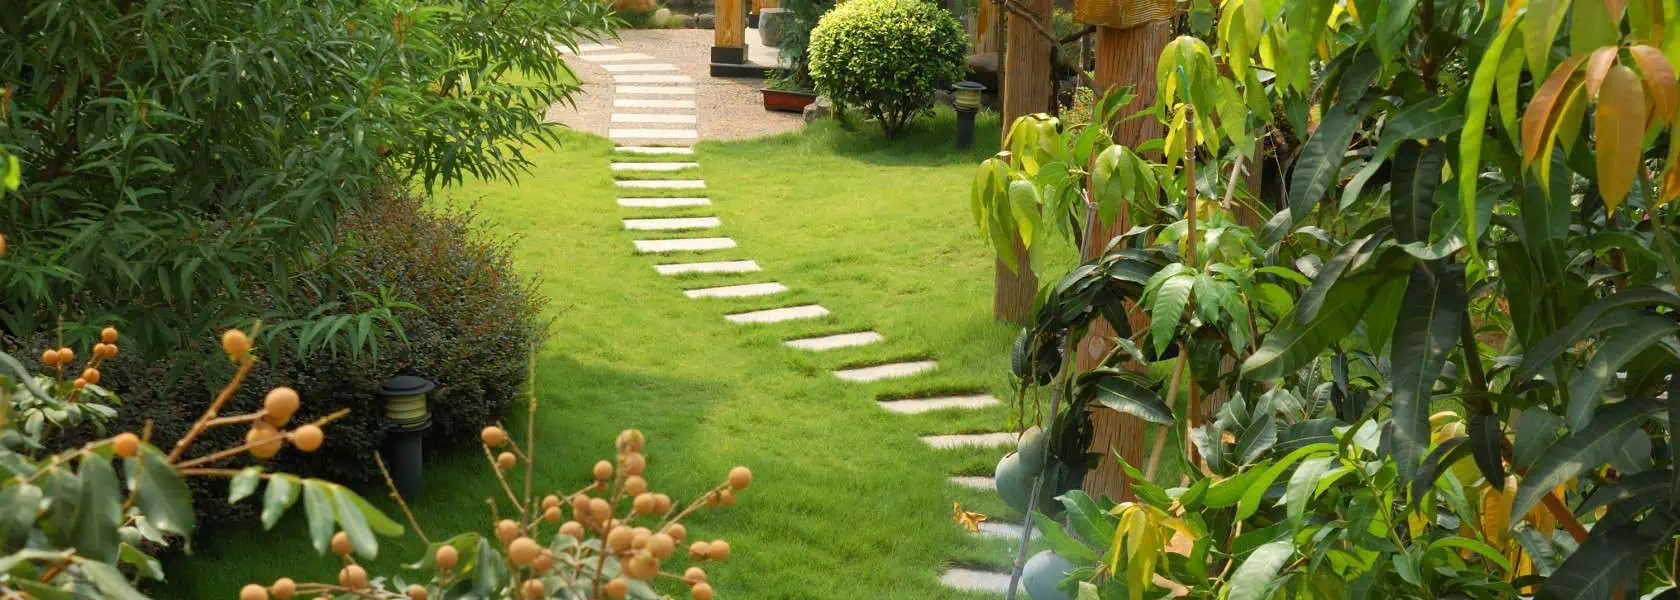 Hoveniersbedrijf van Dam woerden tuin voorbeeld